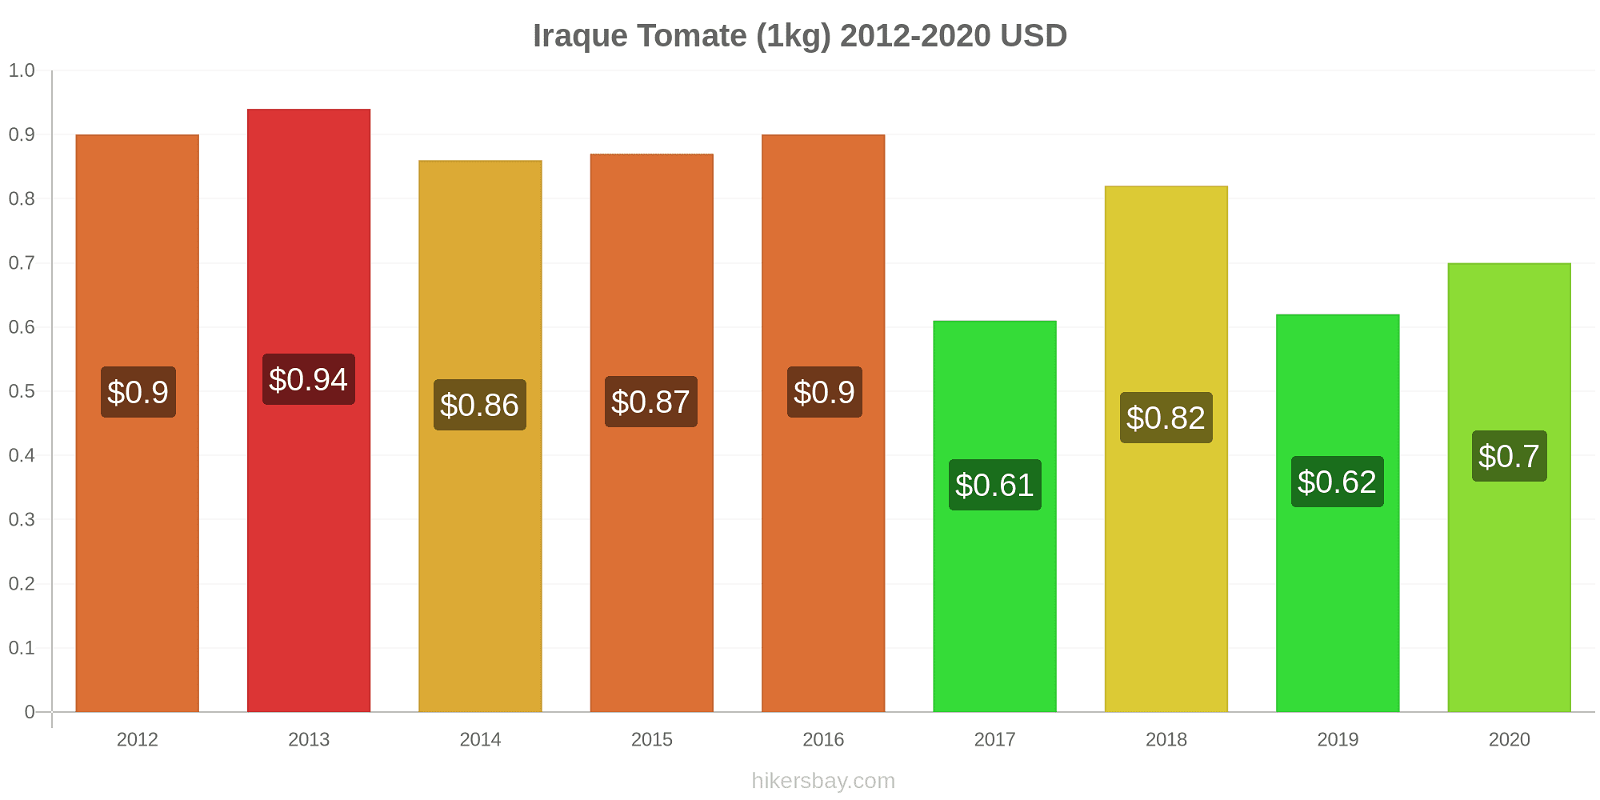 Iraque variação de preço Tomate (1kg) hikersbay.com